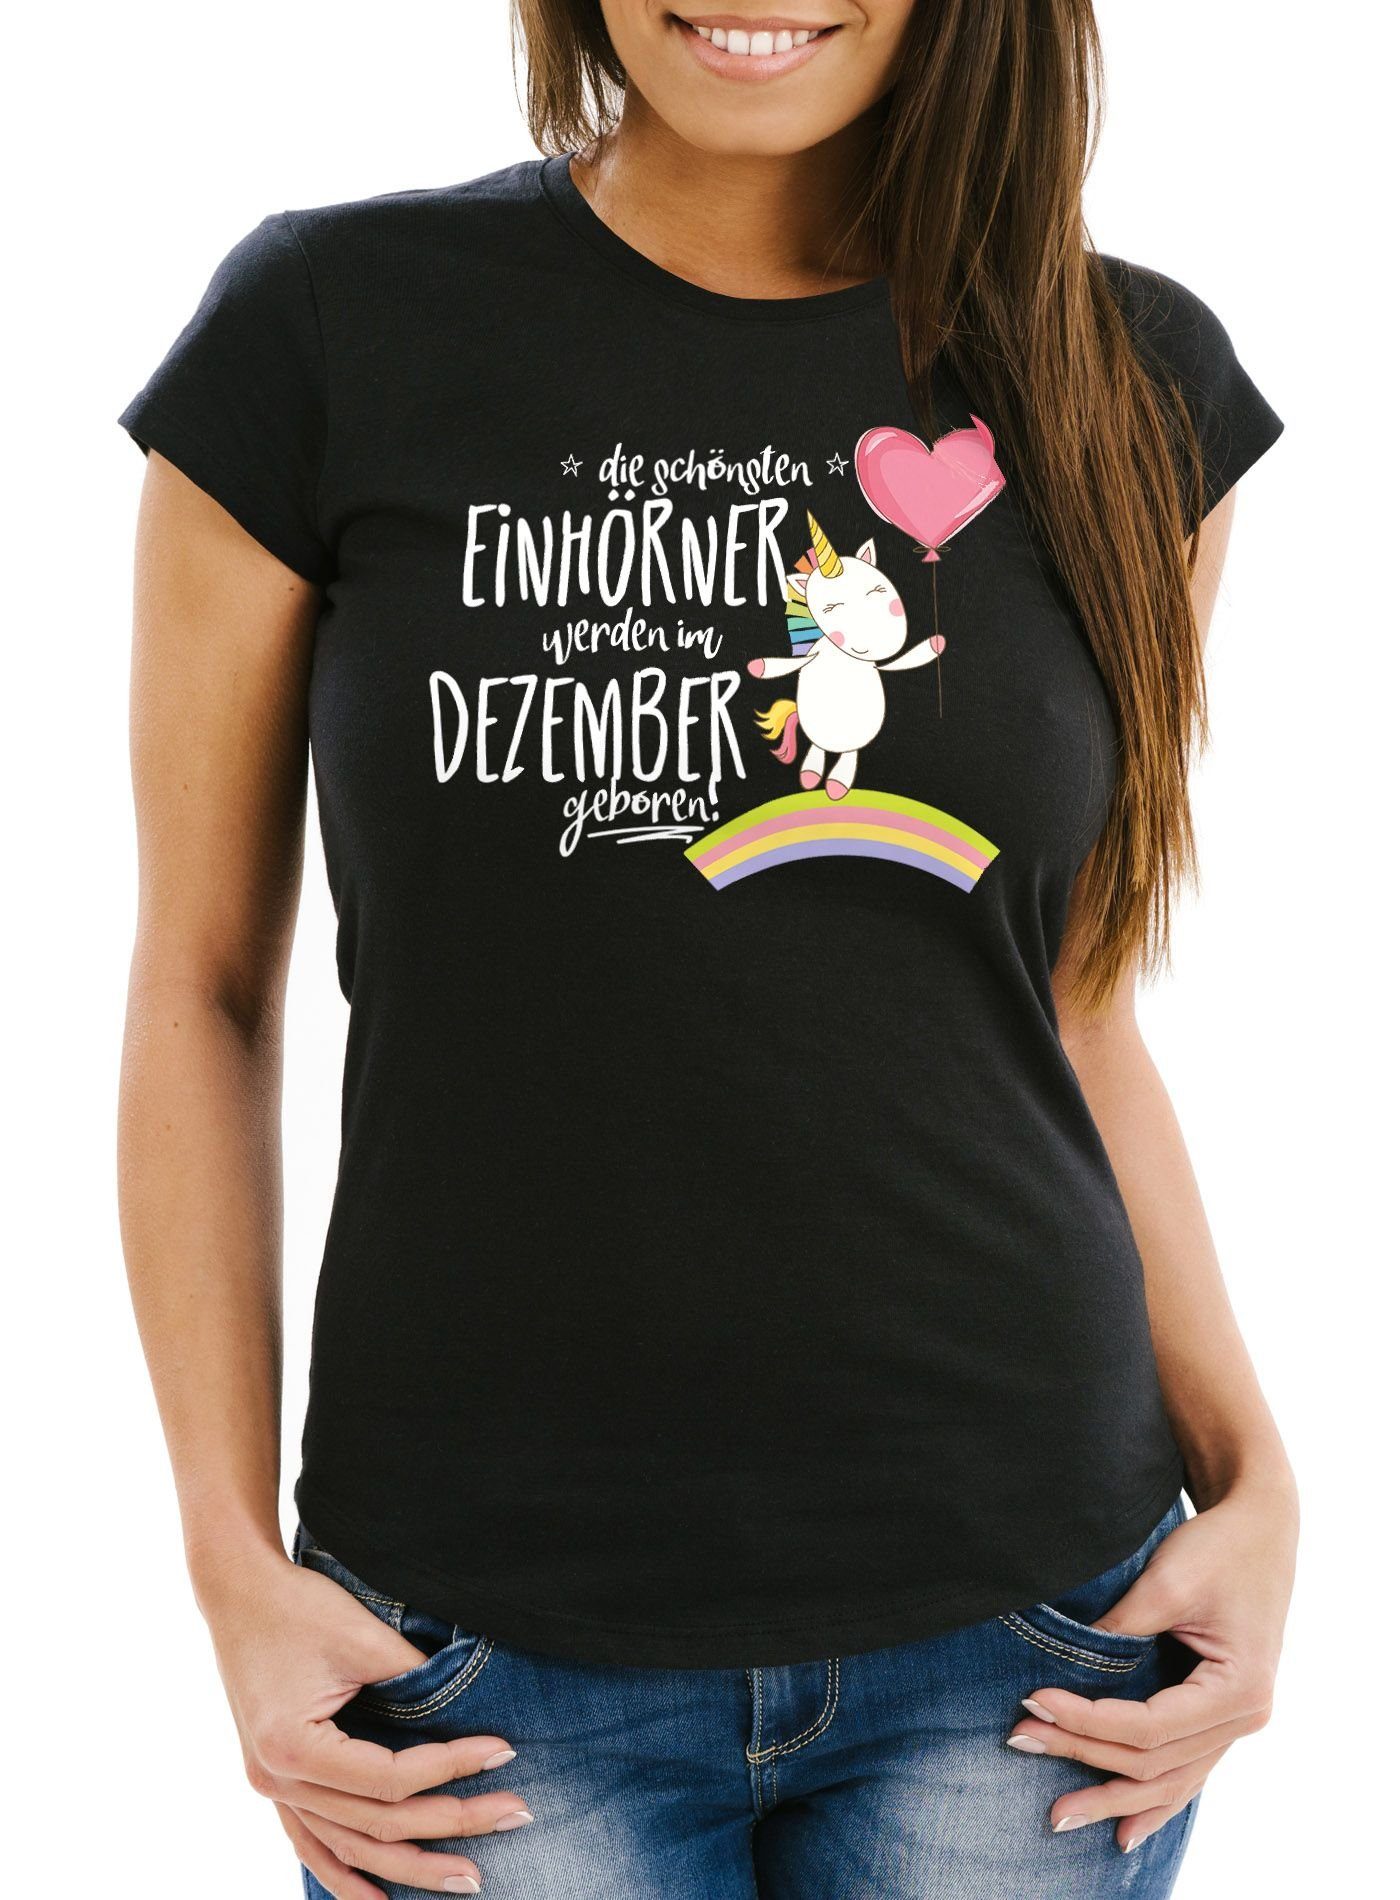 MoonWorks Print-Shirt Damen T-Shirt die schönsten Einhörner werden im Dezember geboren Slim Fit Geschenk Geburtstag Moonworks® mit Print schwarz